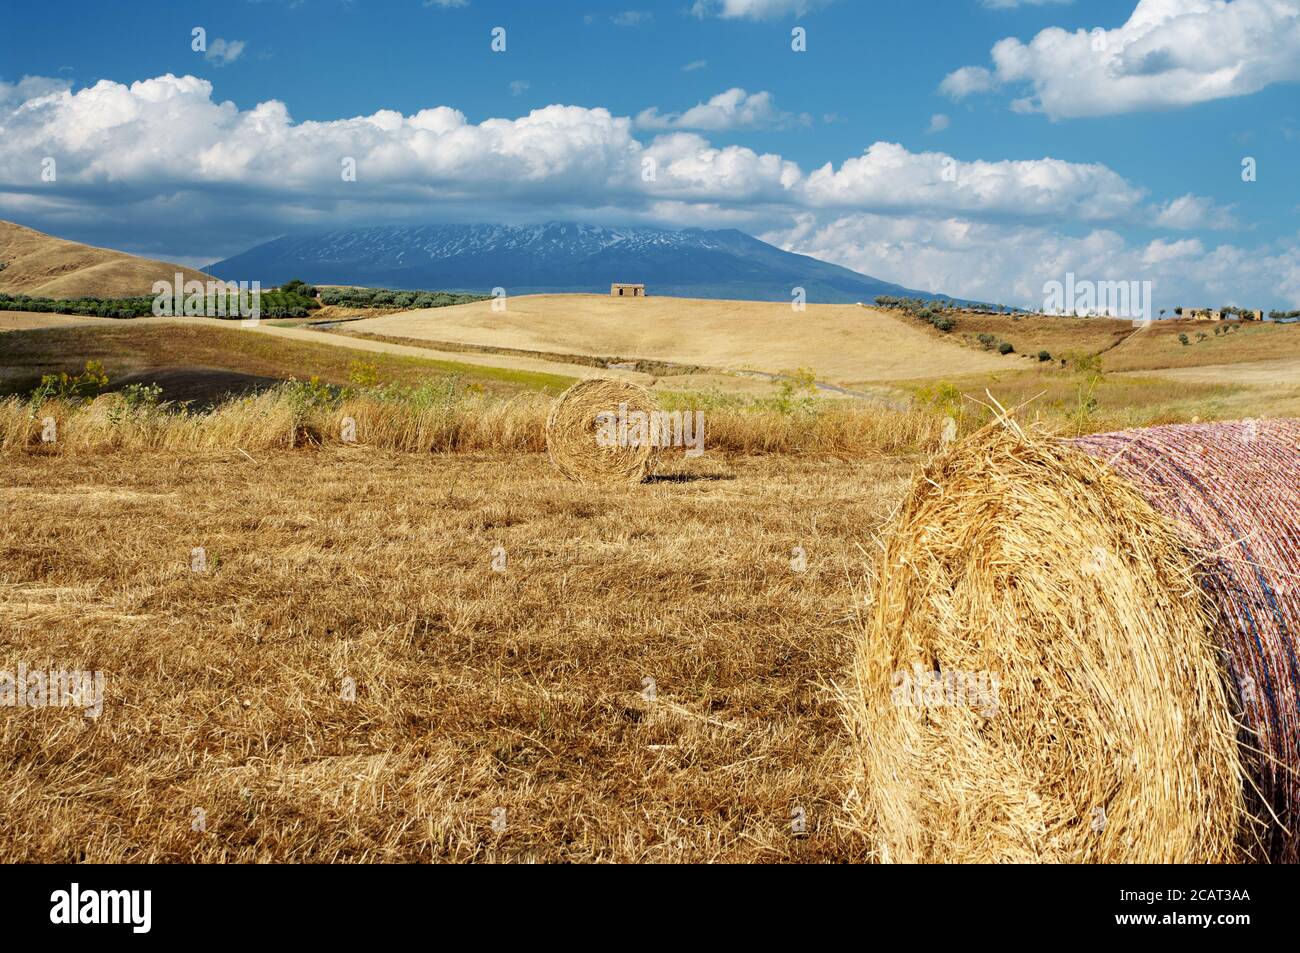 Paysage rural de la Sicile en été avec balles rondes de foin et abandonné bâtiment sur une colline au-dessous du ciel bleu et nuages blancs Banque D'Images